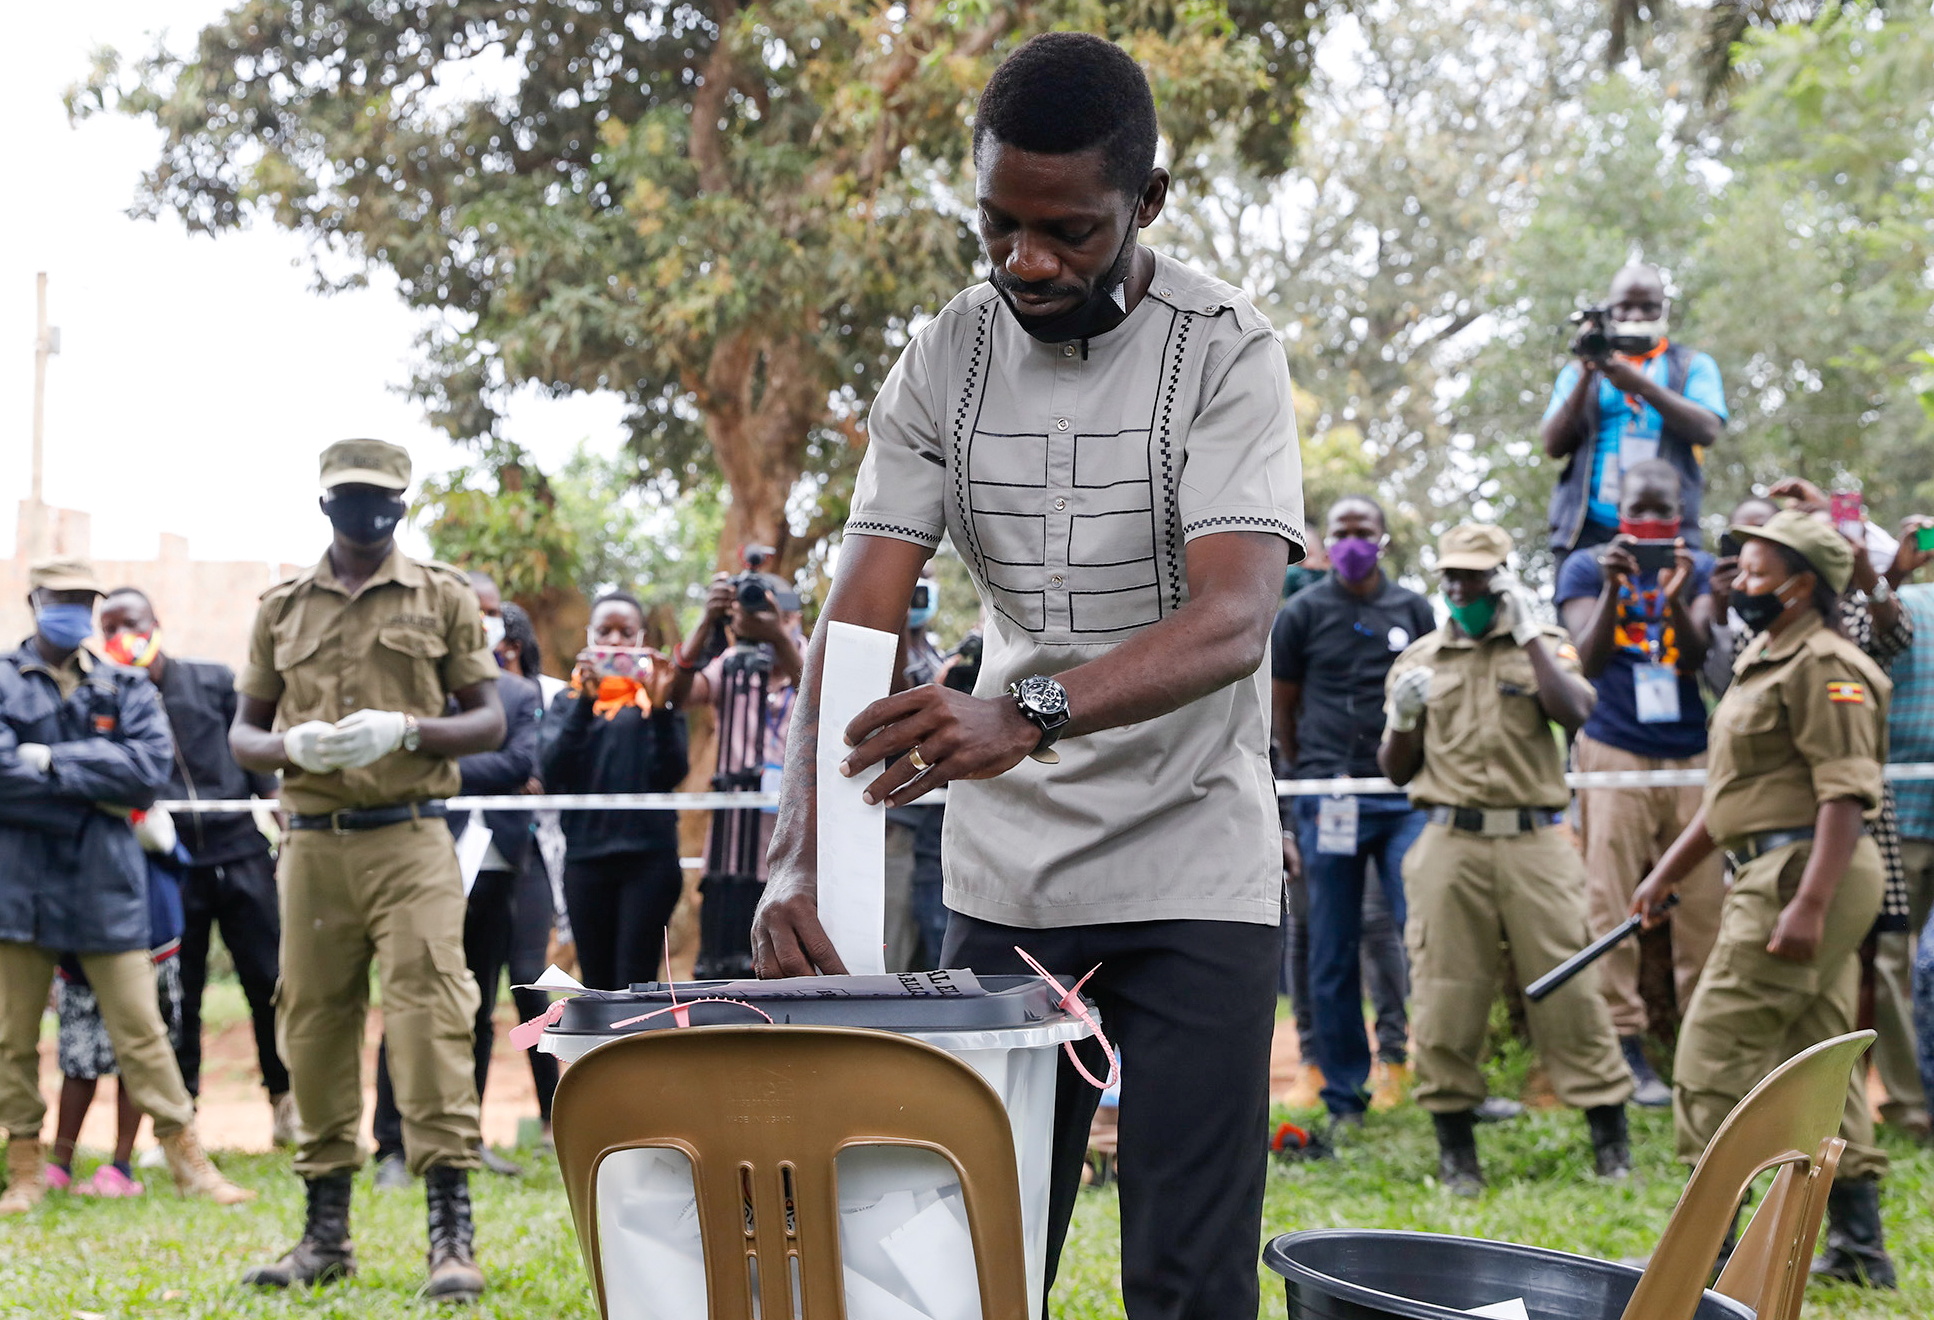 Robert Kyagulanyi Ssentamu, conocido como Bobi Wine, deposita su voto en las elecciones presidenciales en Kampala, Uganda, el 14 de enero de 2021 (REUTERS/Baz Ratner)